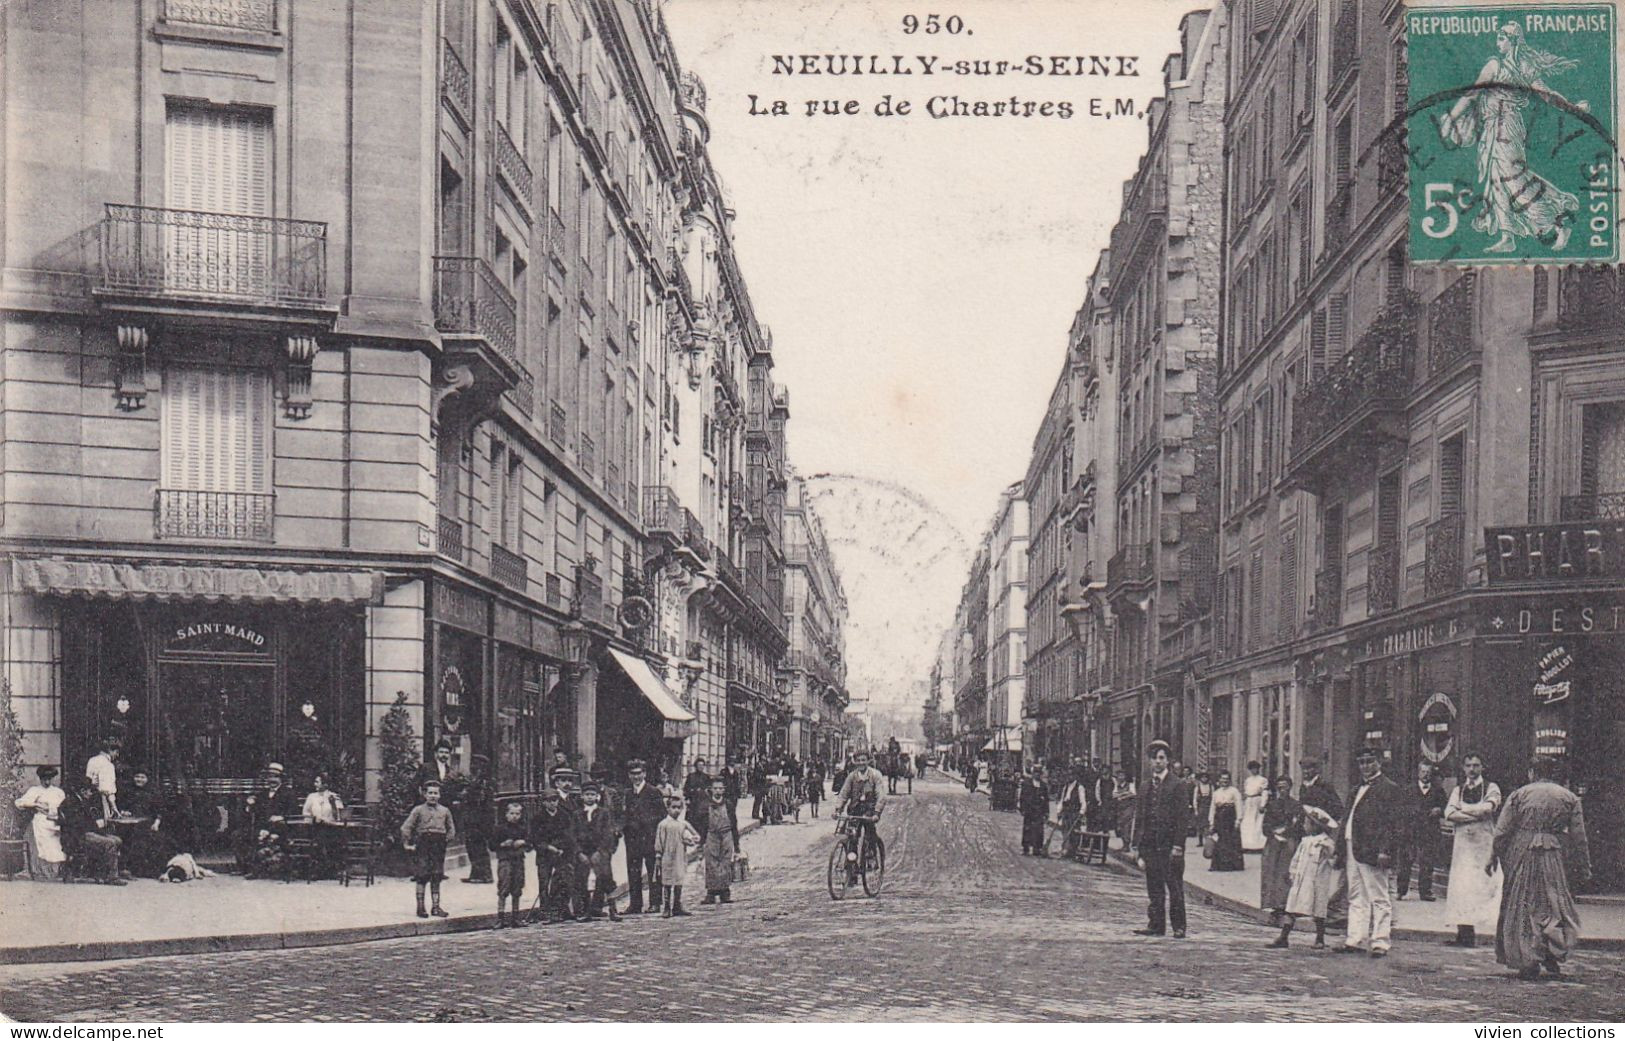 Neuilly Sur Seine (92 Hauts De Seine) La Rue De Chartres - édit. EM N° 950 Circulée 1911 - Neuilly Sur Seine